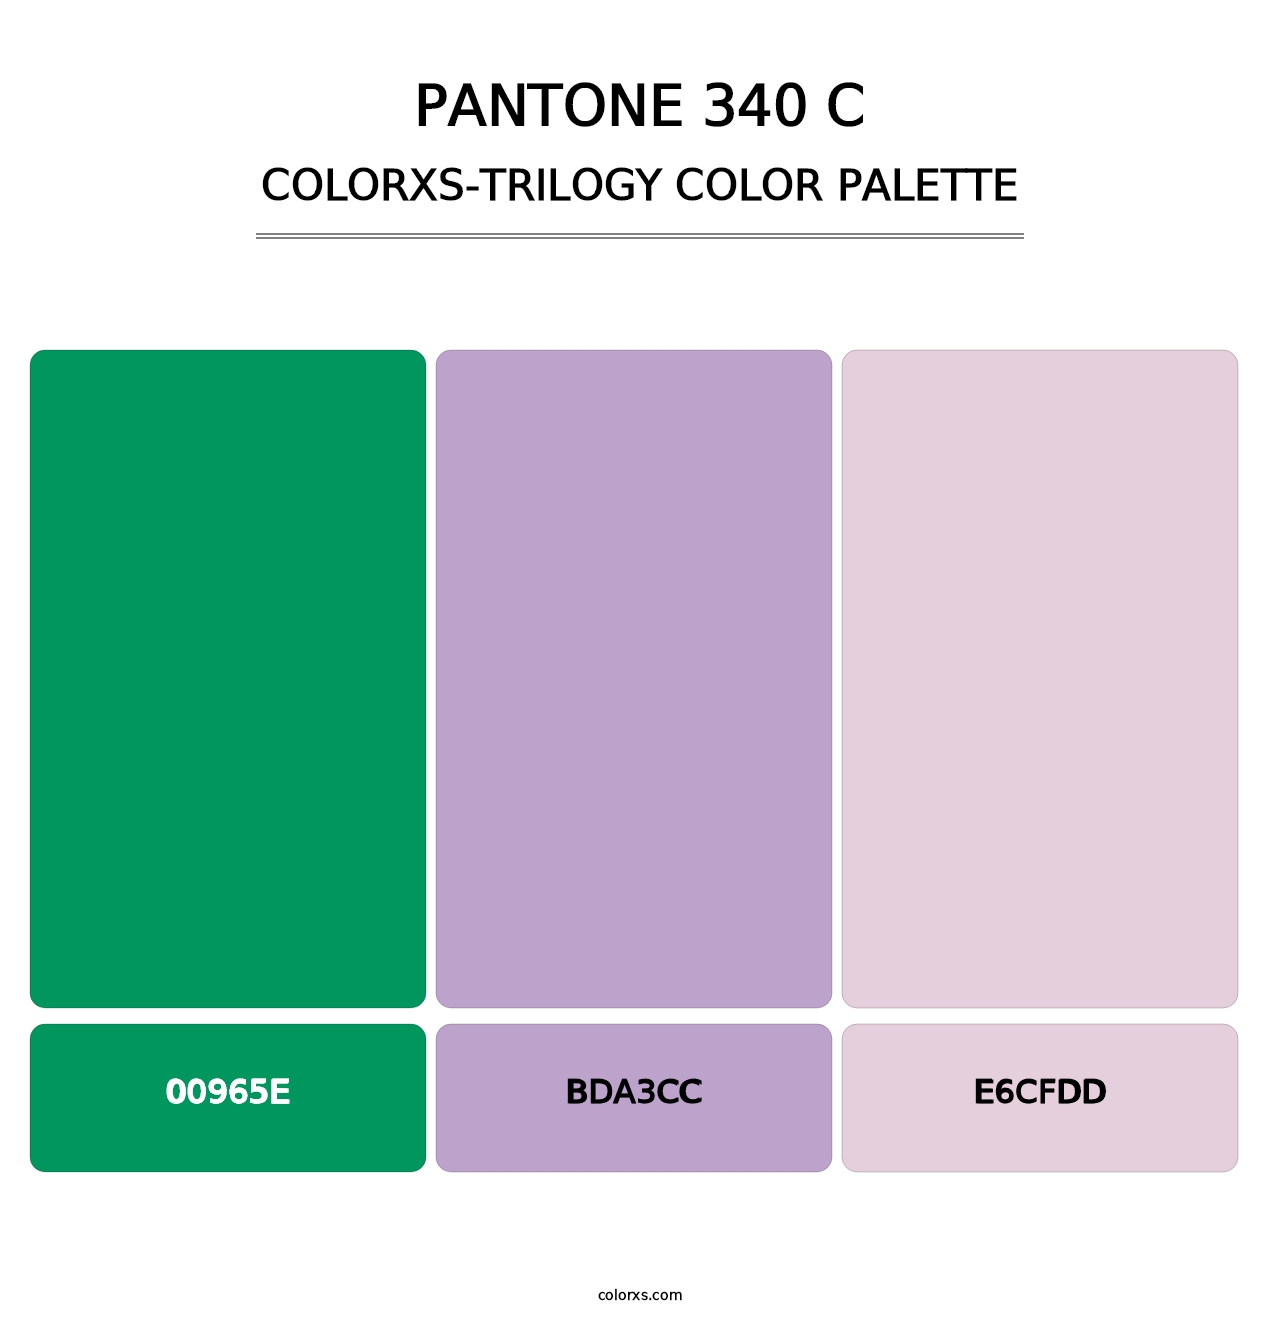 PANTONE 340 C - Colorxs Trilogy Palette